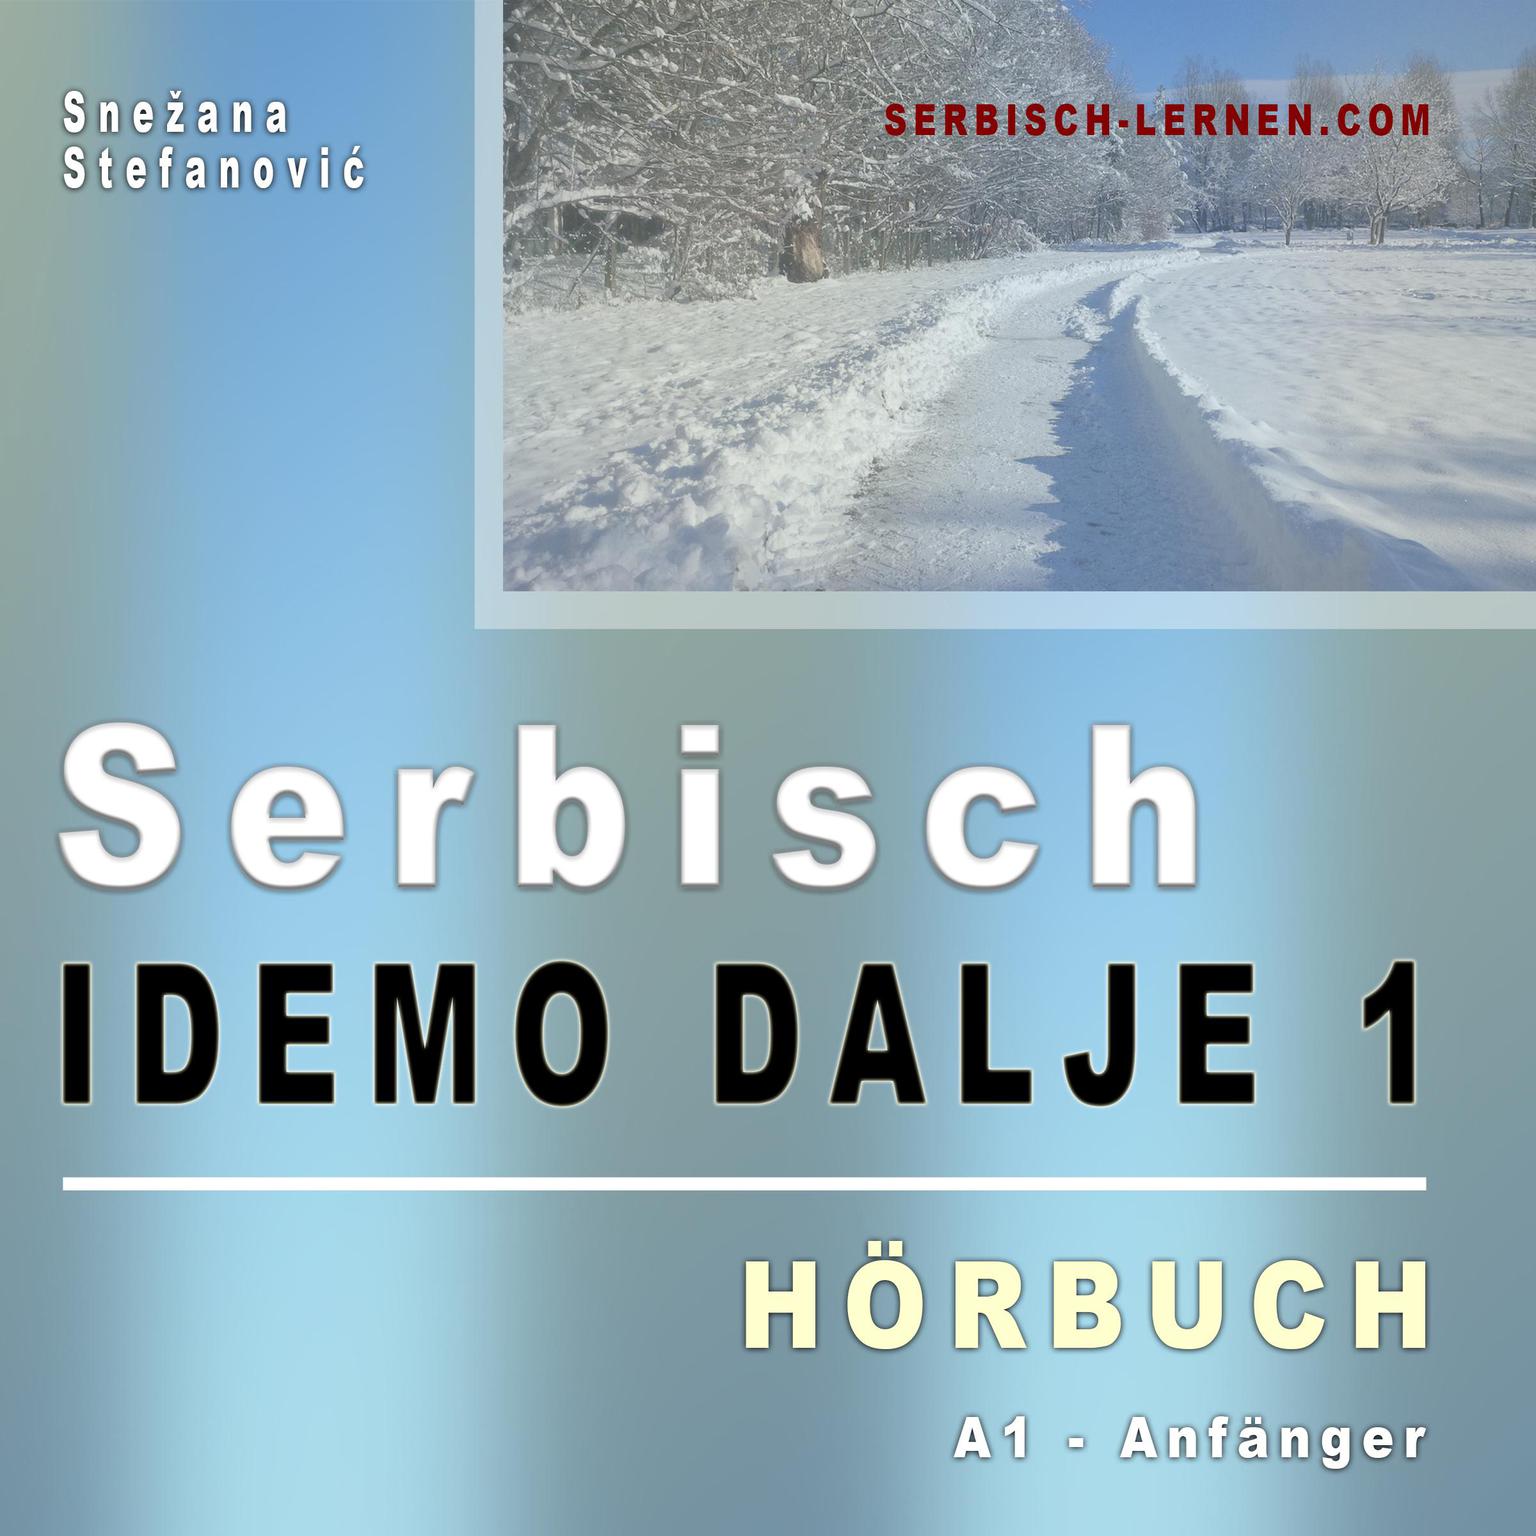 Serbisch Idemo dalje 1 - Hörbuch: Hörbuch in serbischer Sprache Audiobook, by Snezana Stefanovic